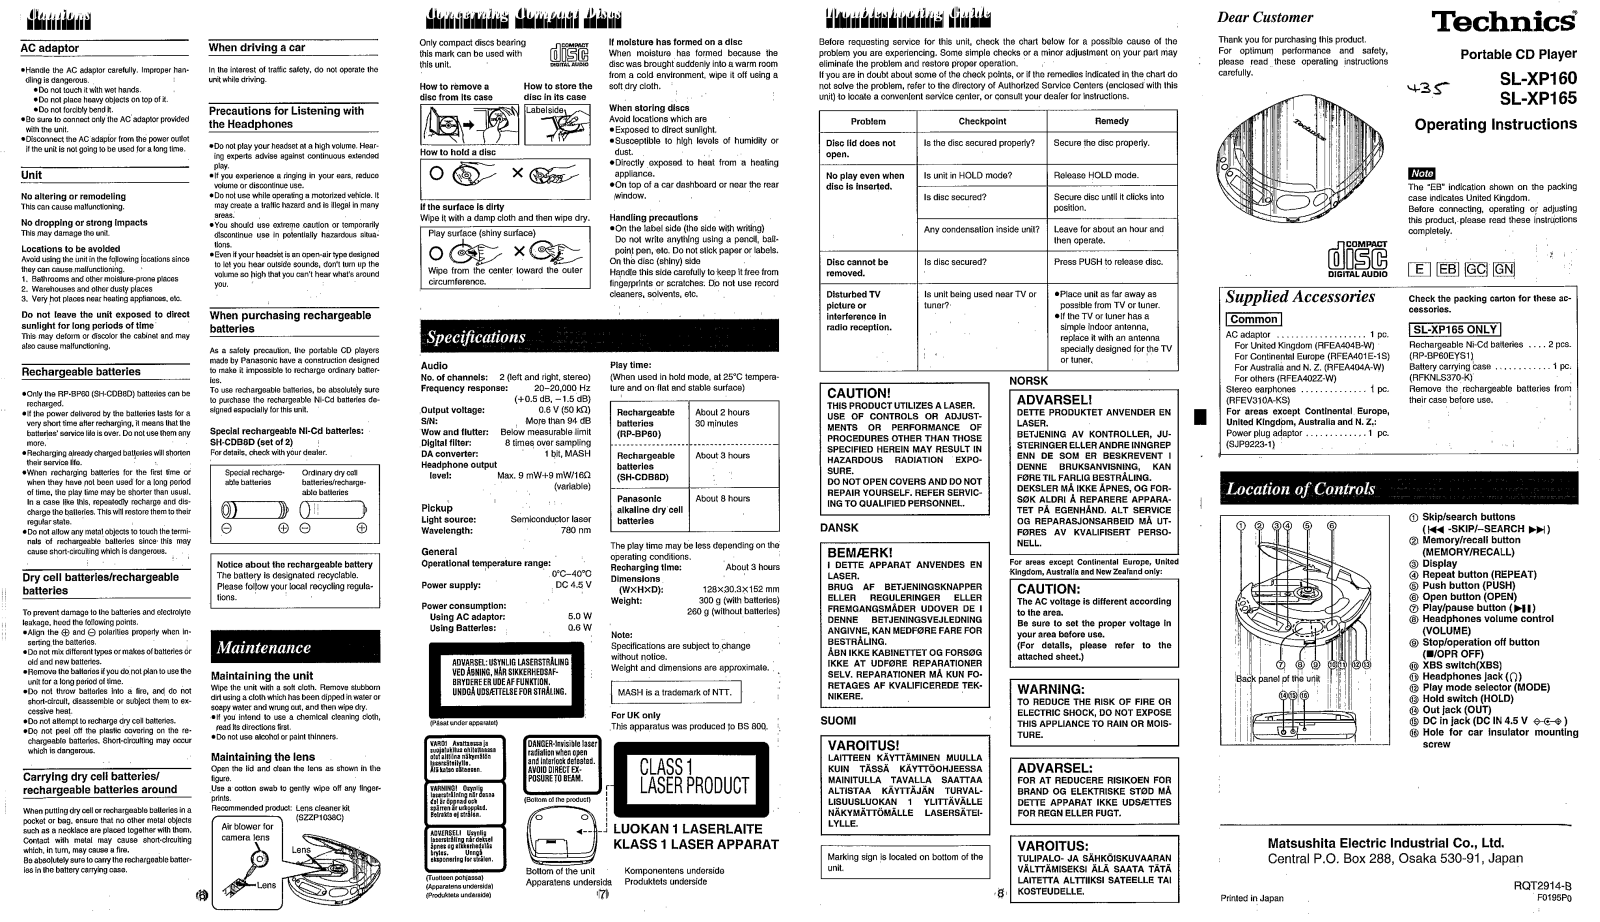 Panasonic SL-XP160, SL-XP165 User Manual